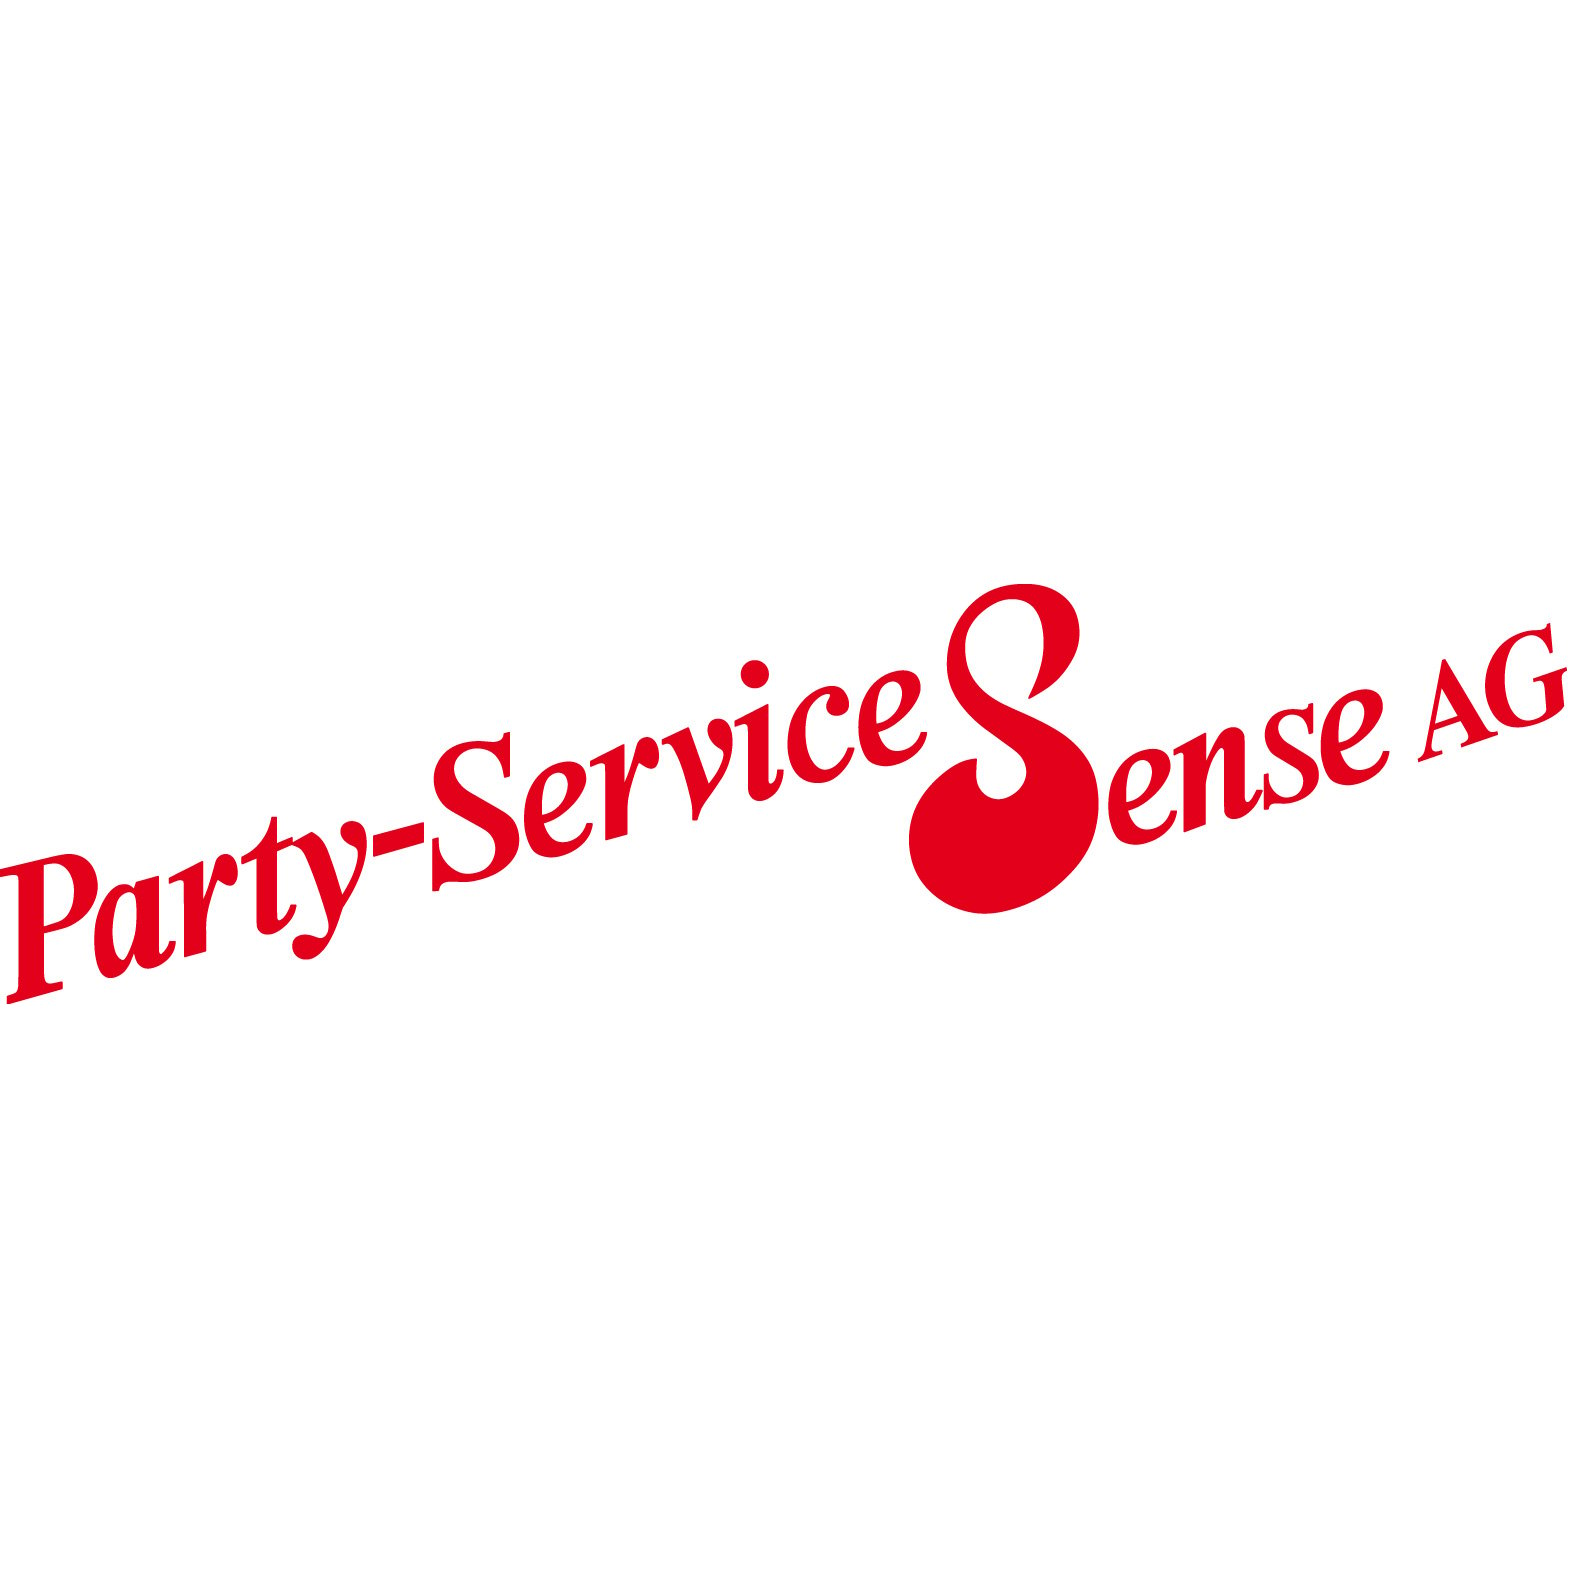 Party-Service Sense AG Logo